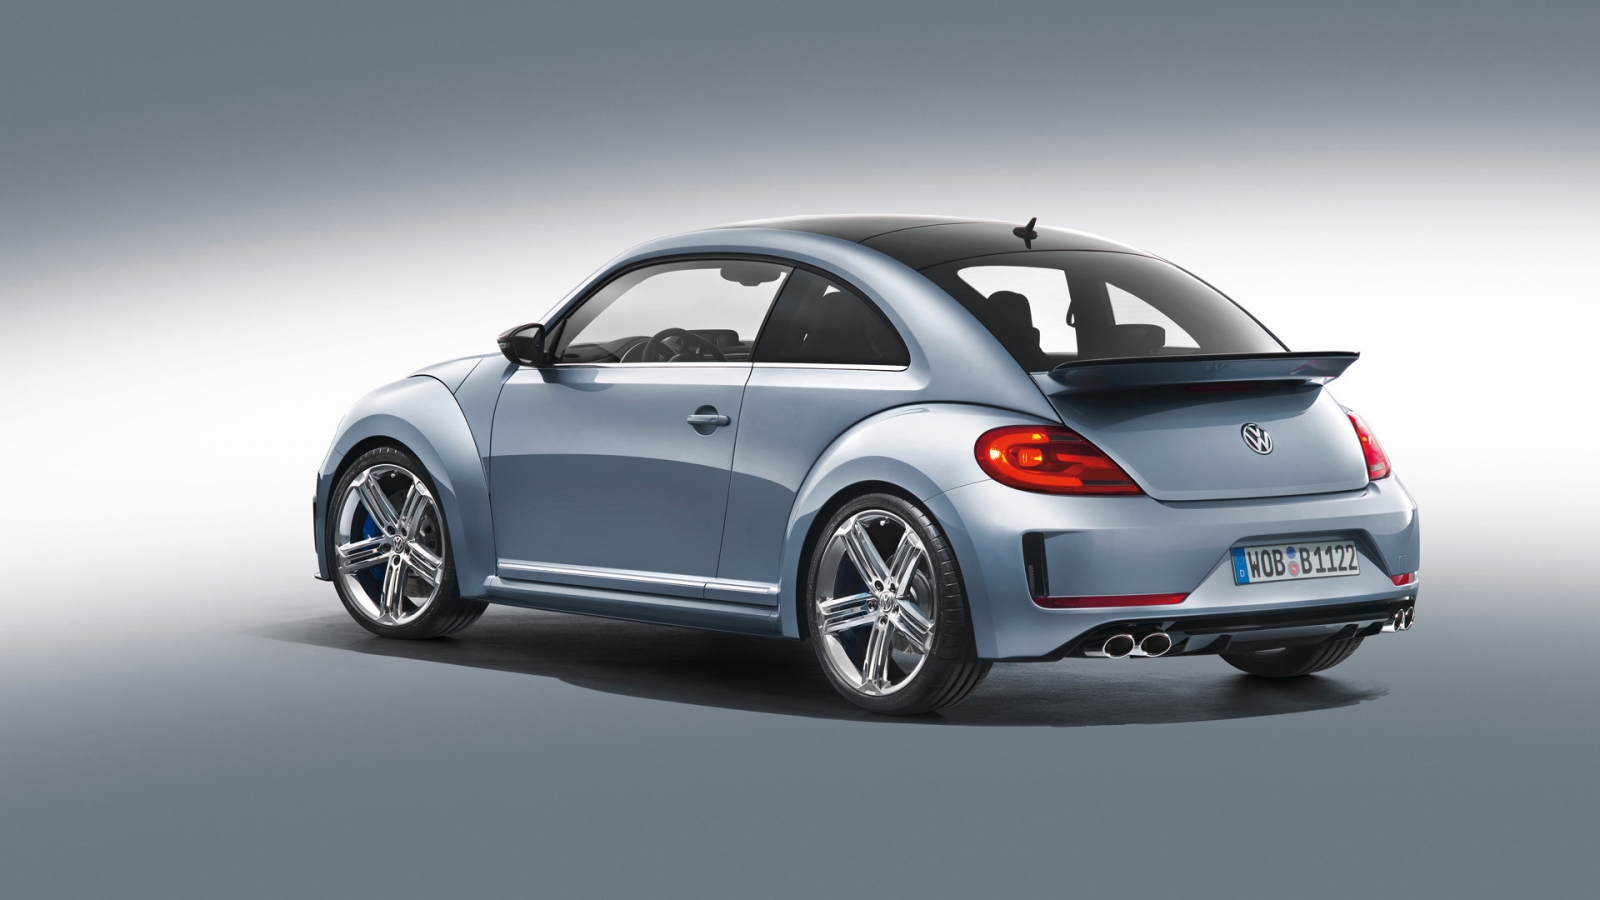 2011 Volkswagen Beetle R Concept Studio for 1600 x 900 HDTV resolution